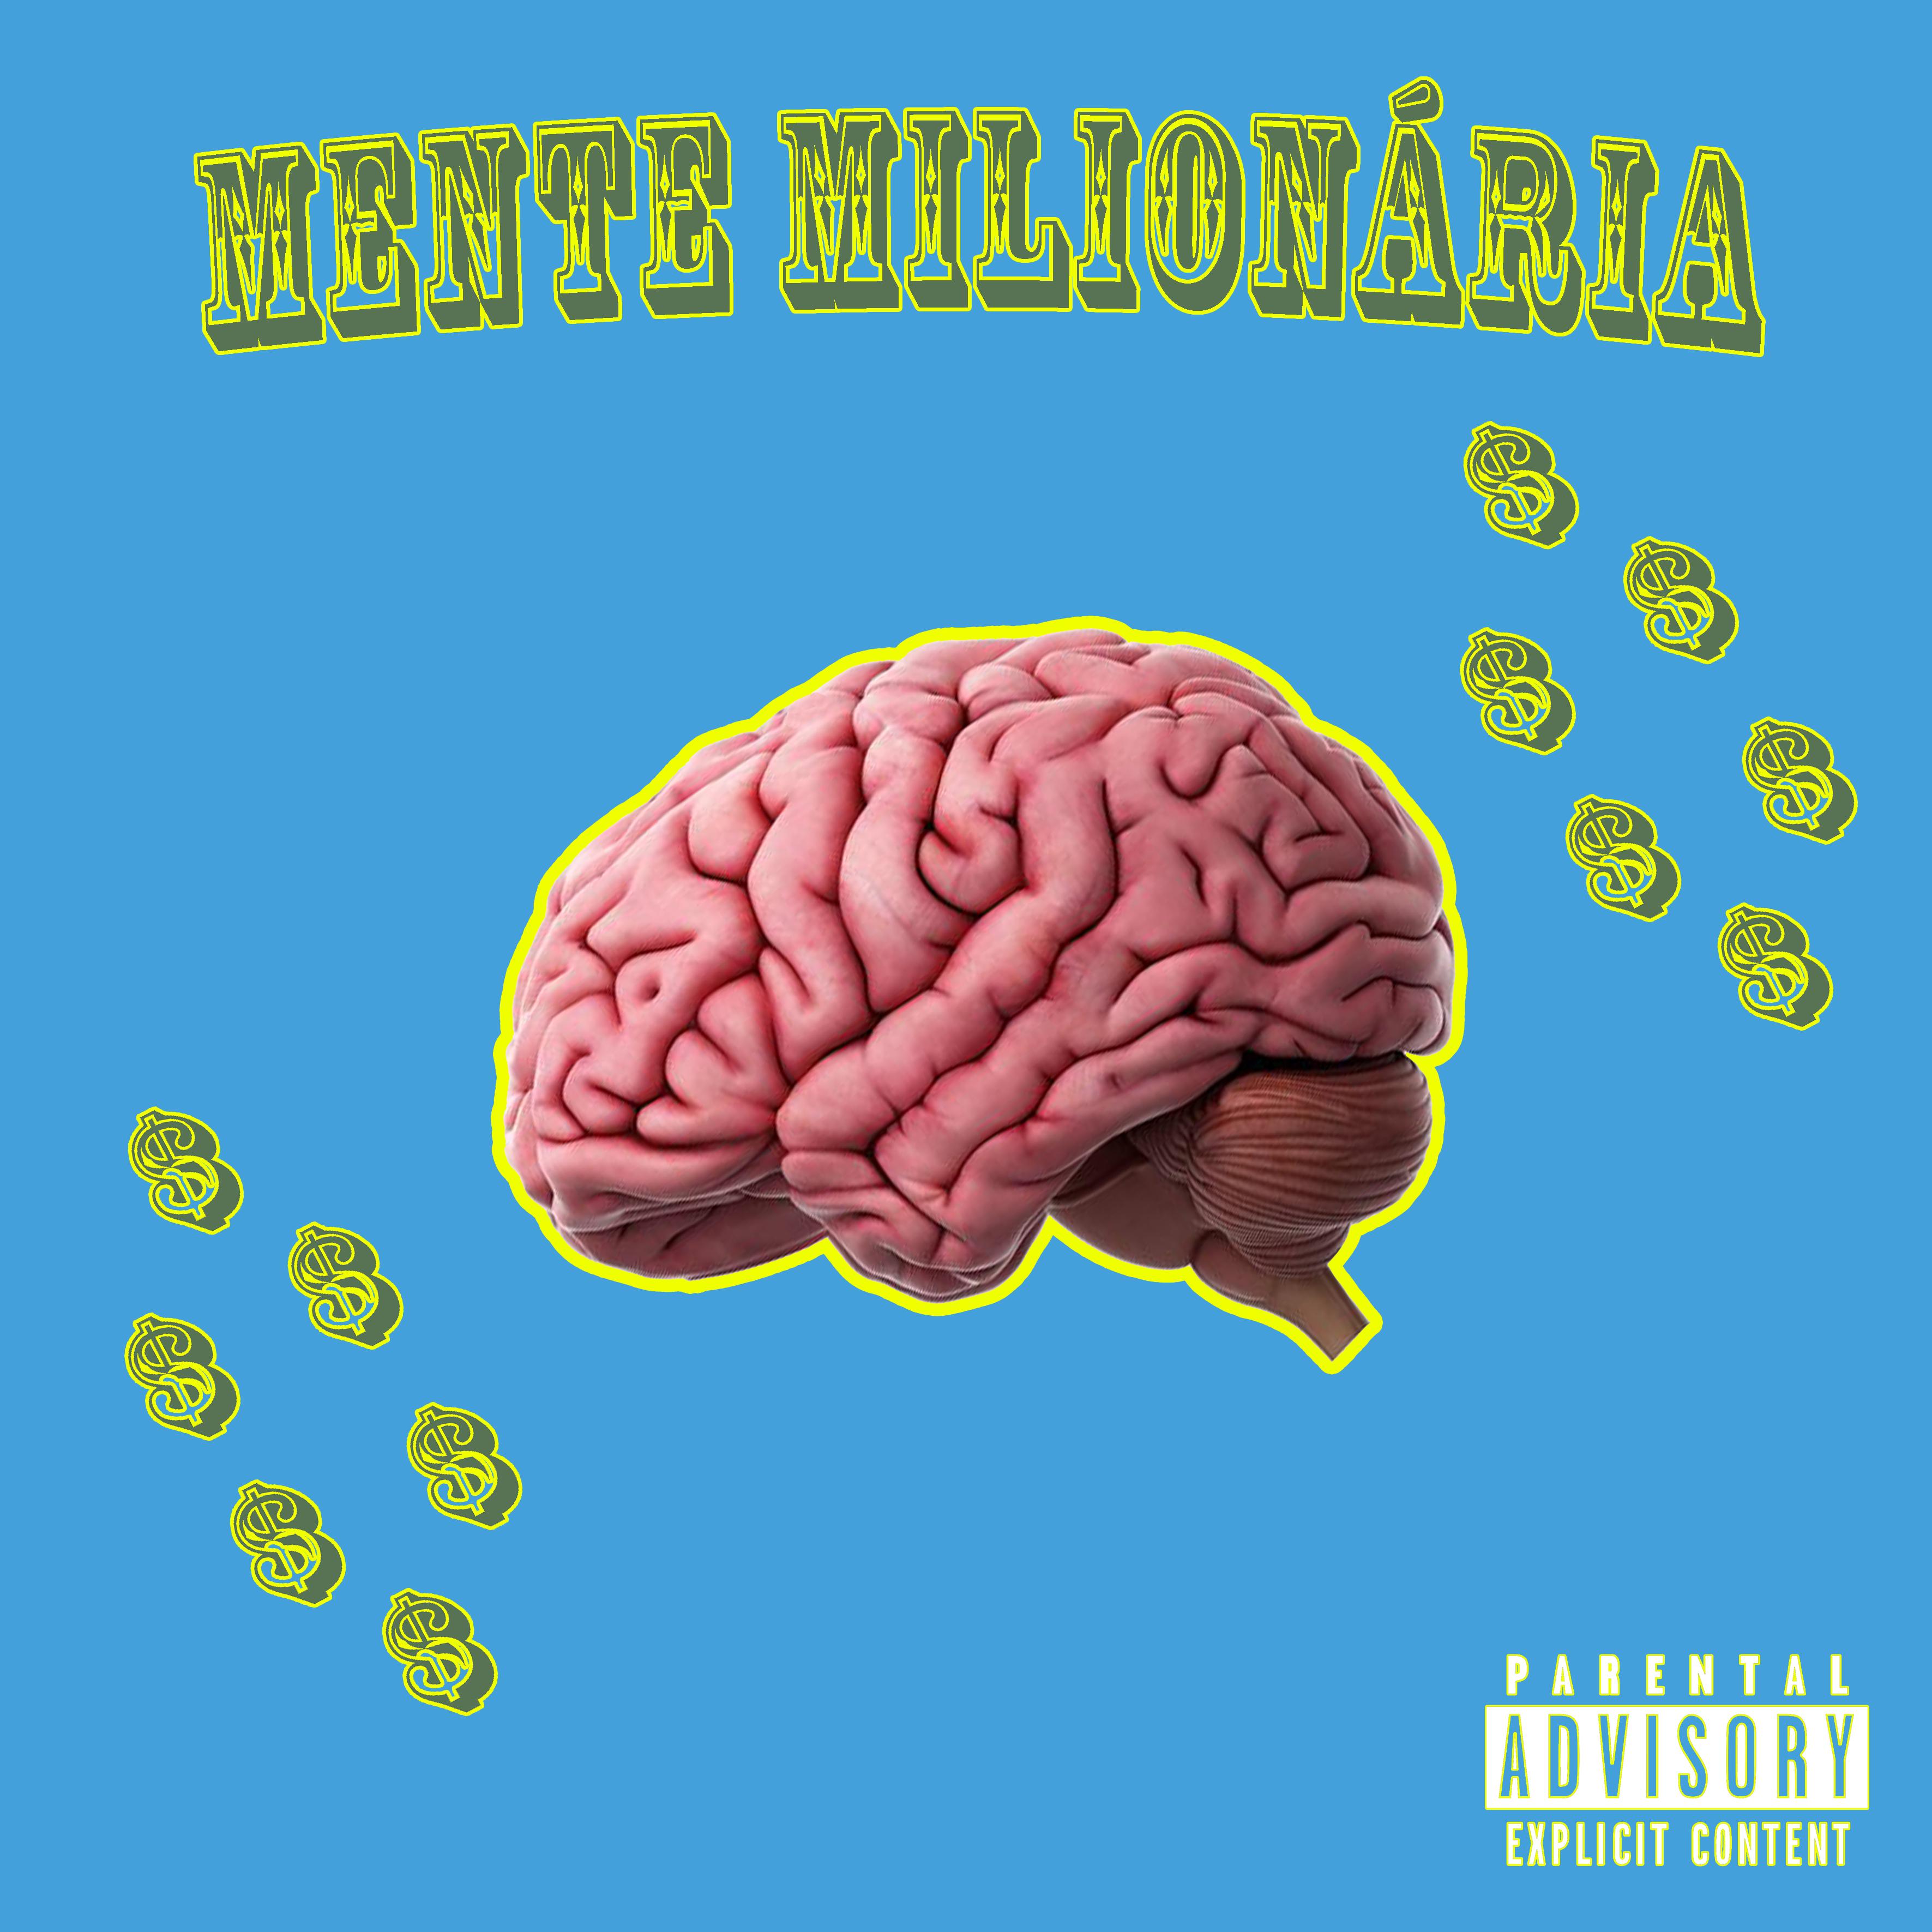 Постер альбома Mente Milionária